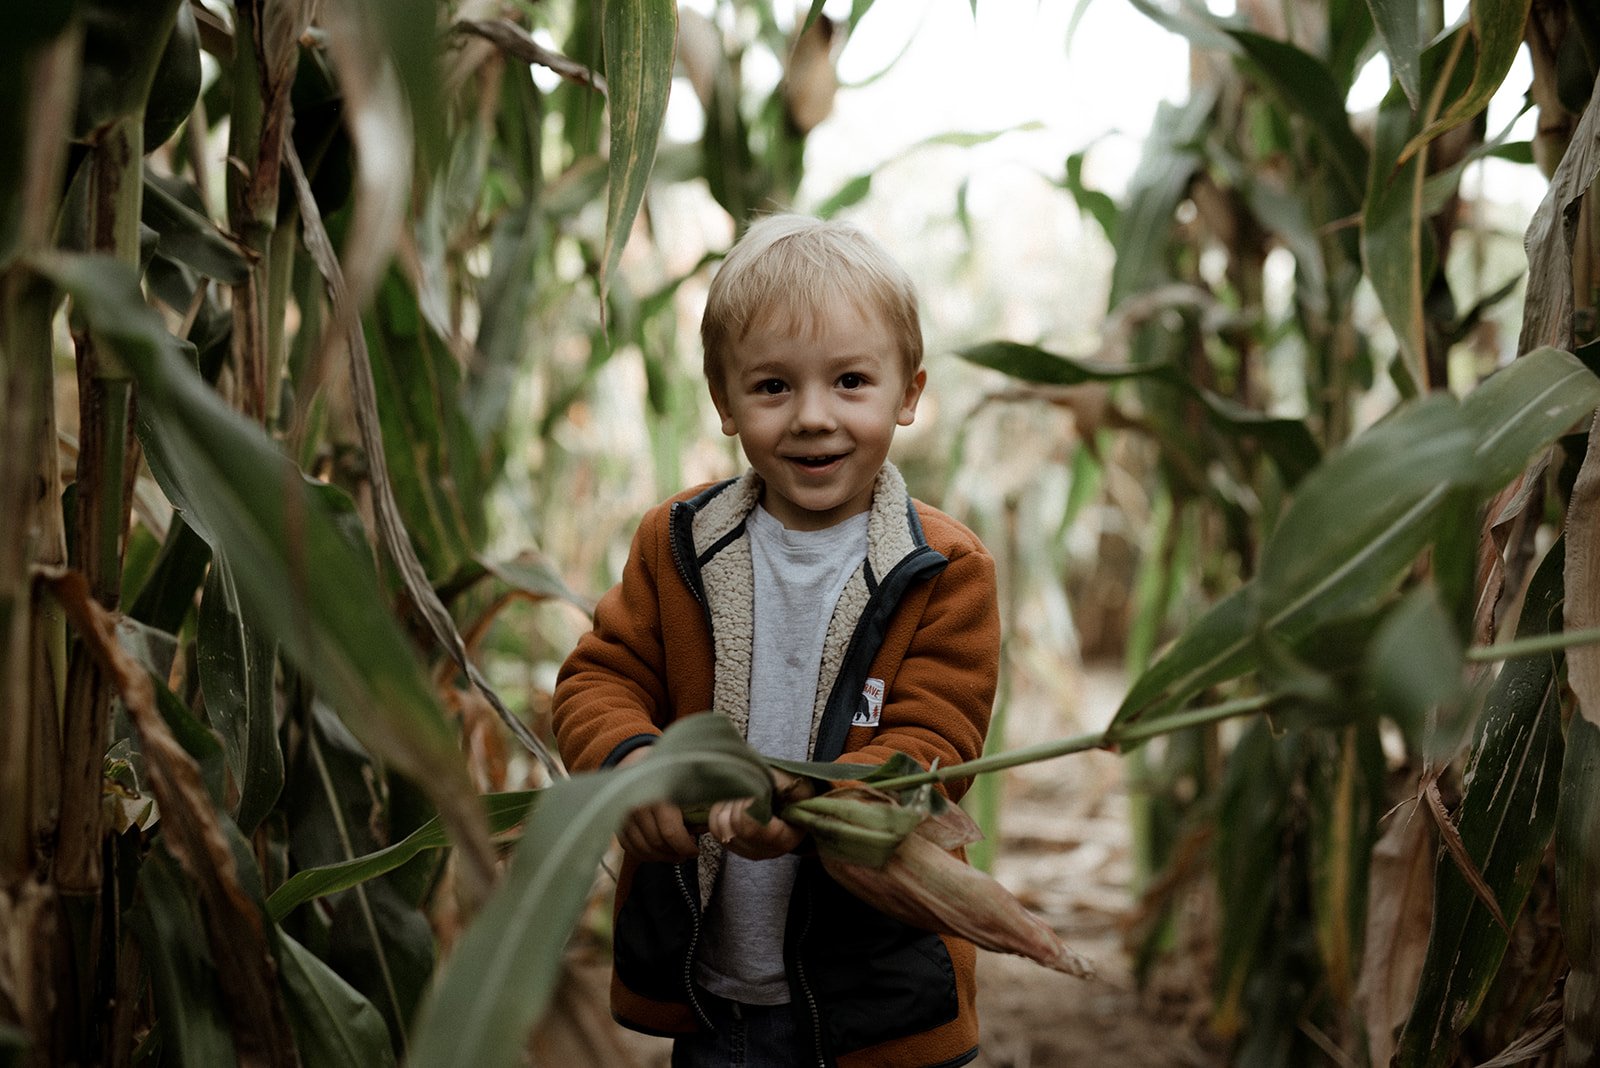 Child in a cornfiled